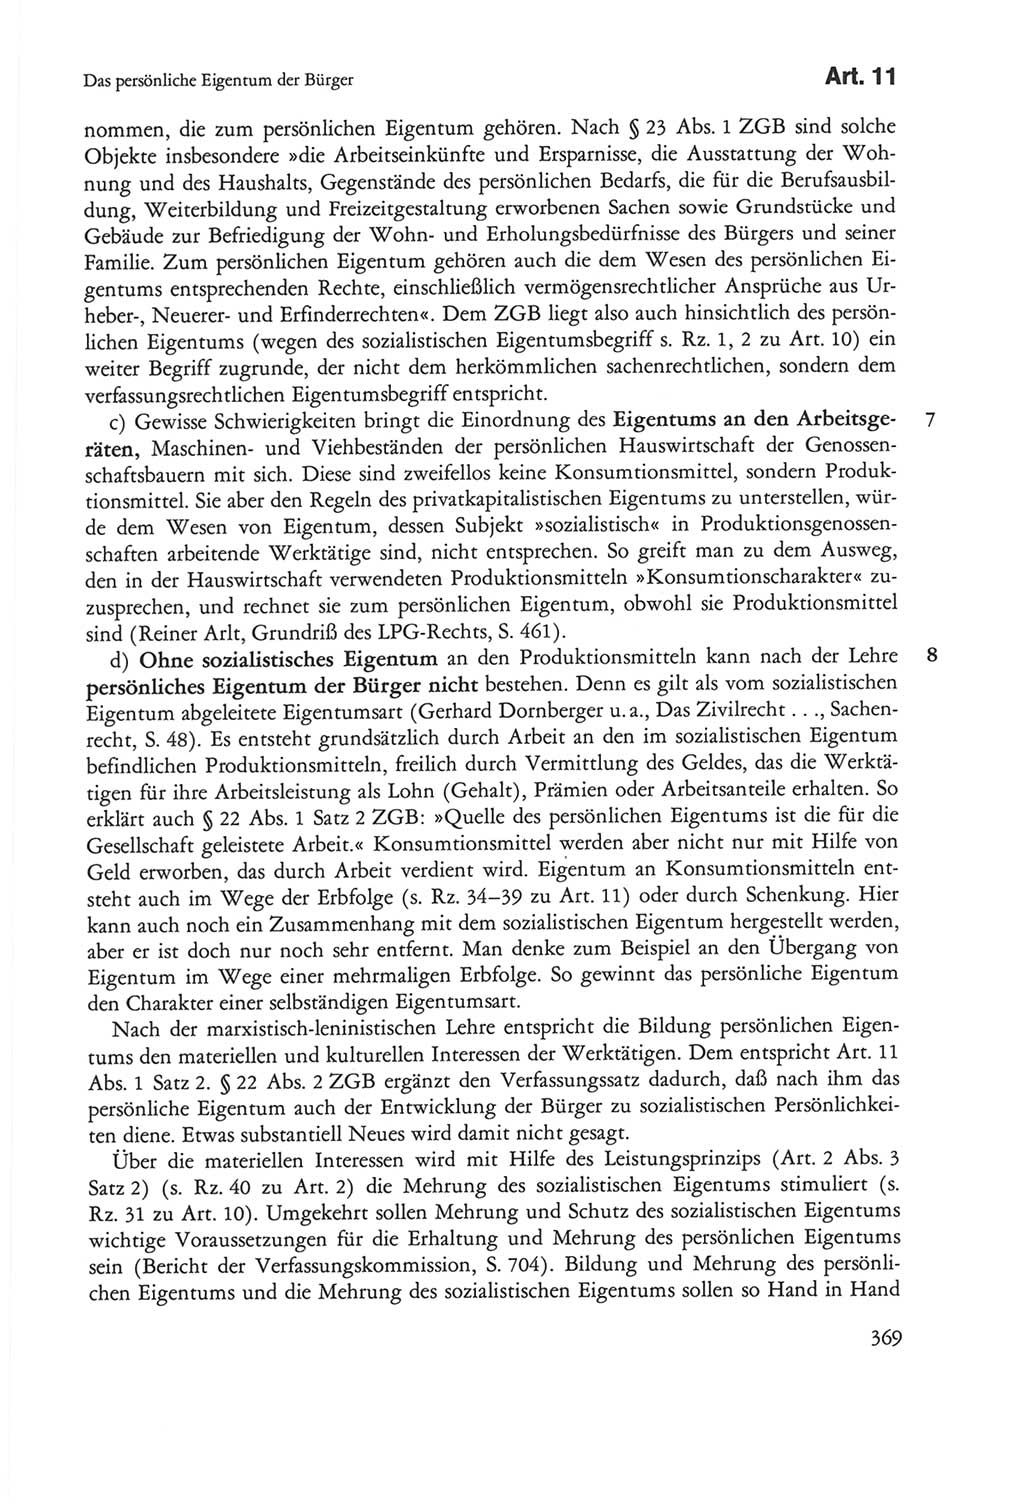 Die sozialistische Verfassung der Deutschen Demokratischen Republik (DDR), Kommentar 1982, Seite 369 (Soz. Verf. DDR Komm. 1982, S. 369)